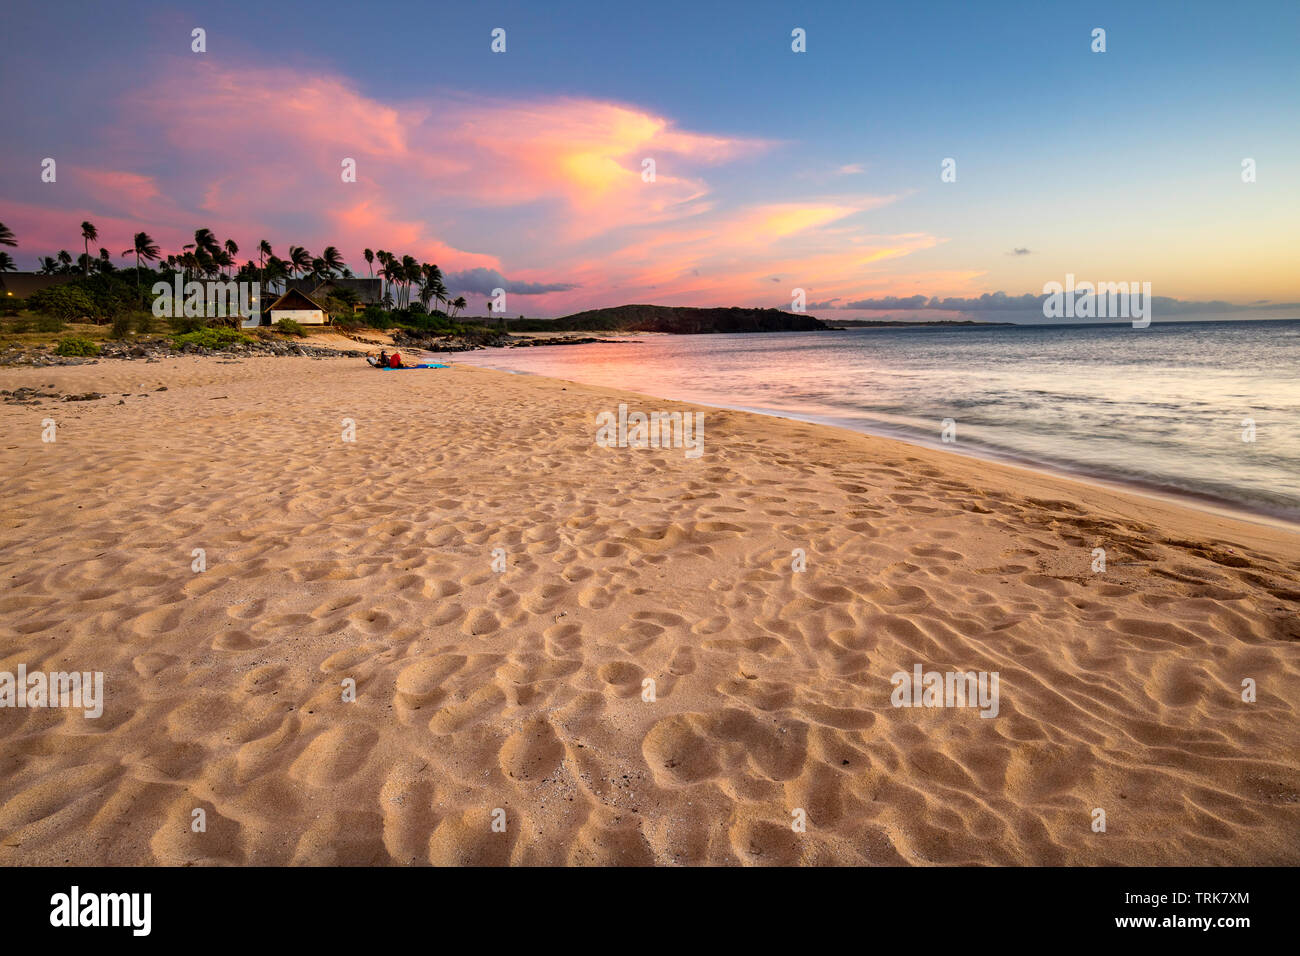 Einen Sandstrand, ruhige Strand und Palmen an Kepuhi Beach am westlichen Ende der Insel Molokai, Hawaii, Vereinigte Staaten von Amerika, Pazifik. Stockfoto